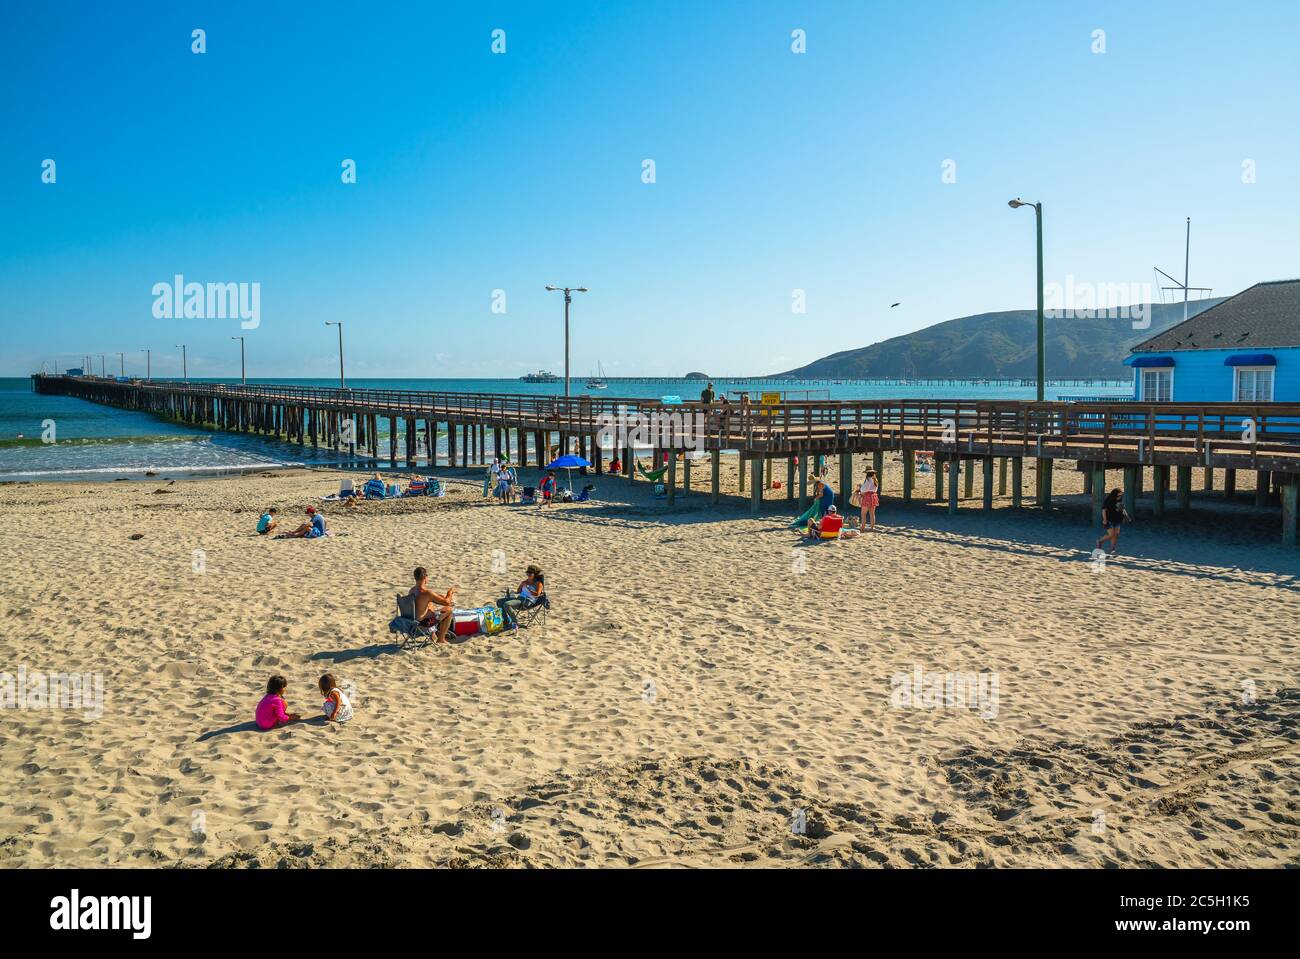 Avila Beach, California/USA - 2. Juli 2020 großer breiter Sandstrand und der Avila Beach Pier, der sich von der Avila Promenade in den Ozean erstreckt Stockfoto